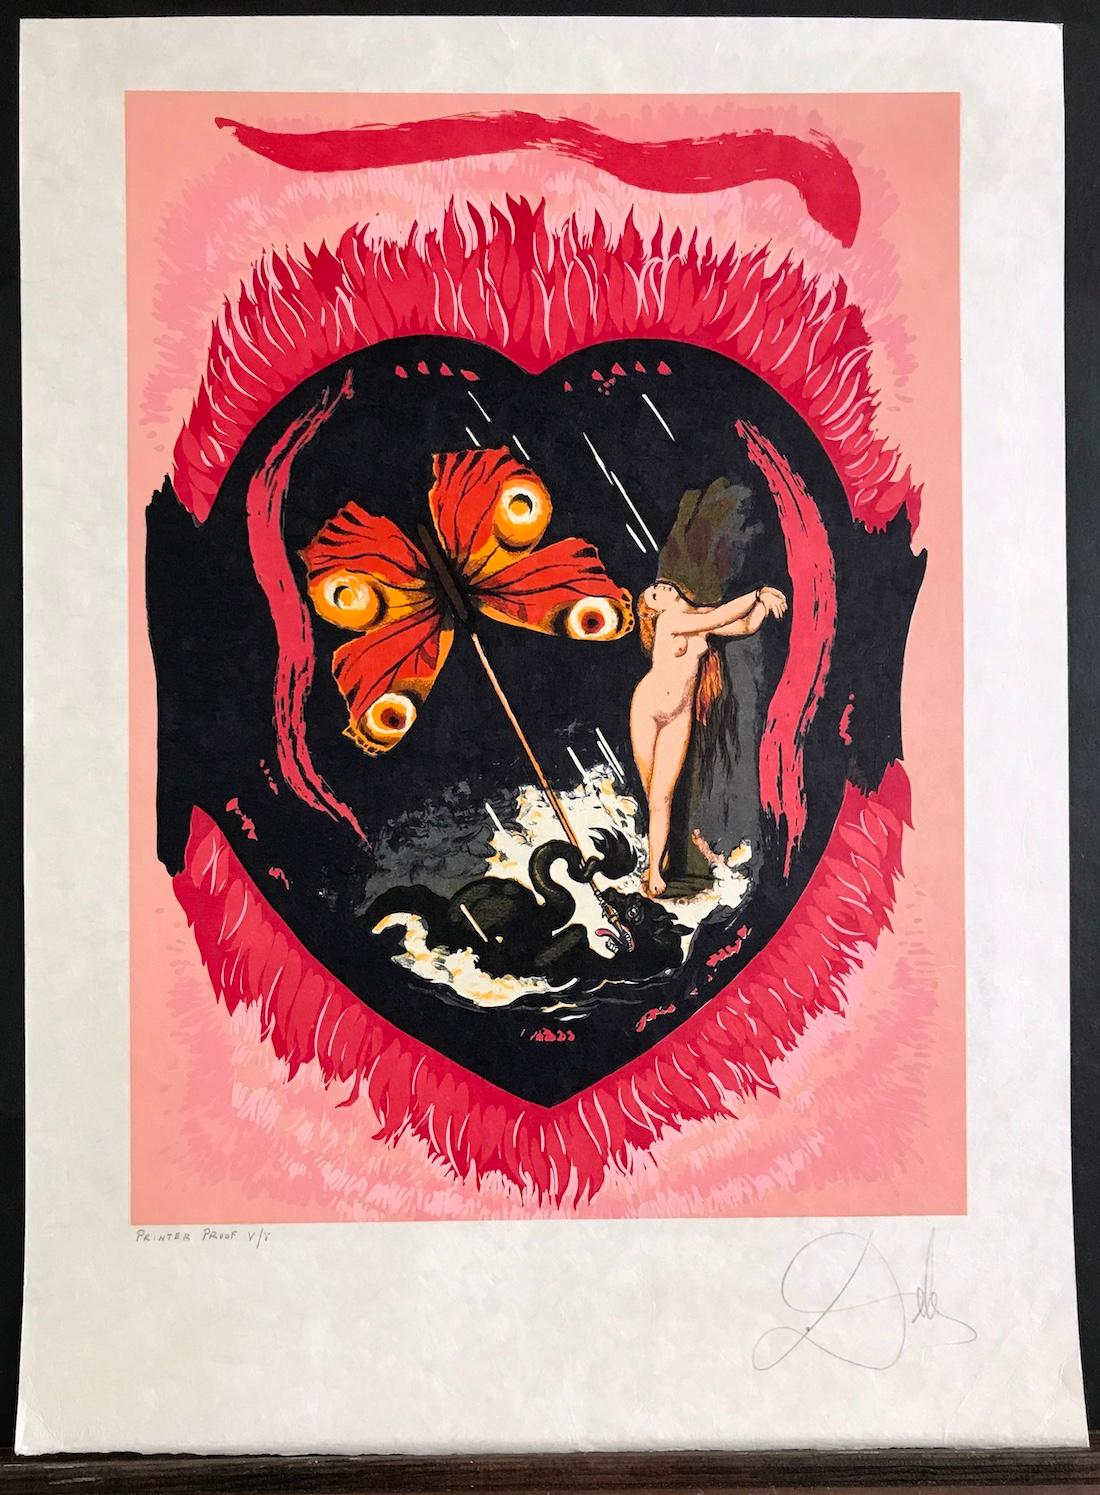 Le Triomphe (Drei Schwerter-Suite) L'Amour Suite, signierte Lithographie auf japanischem Papier (Surrealismus), Print, von Salvador Dalí